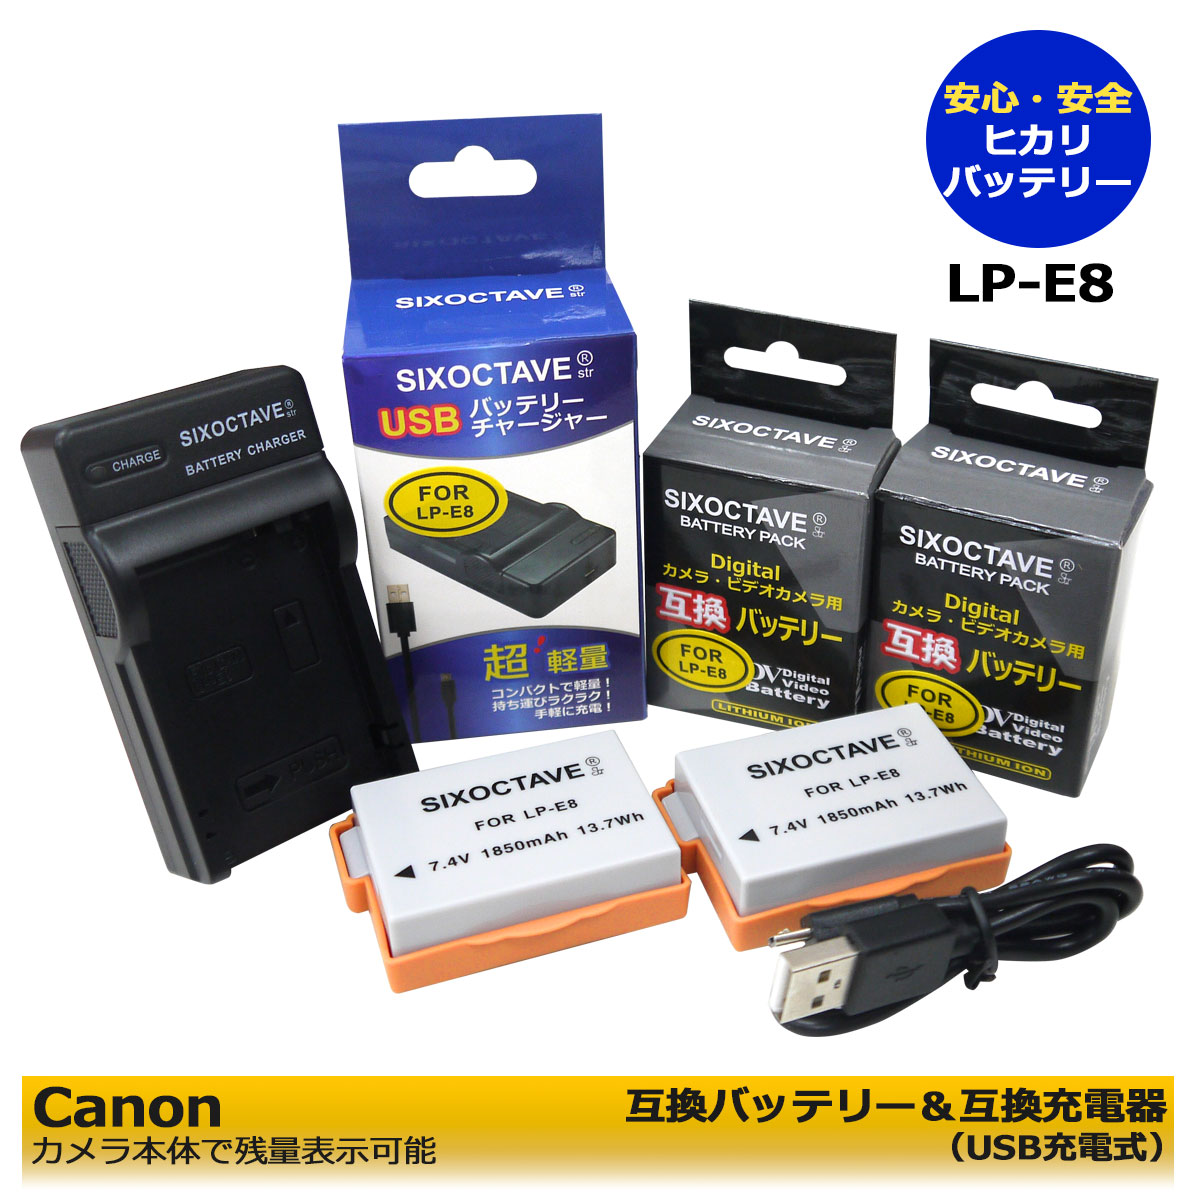 送料無料 CANON LP-E8 互換充電池 2個 と 互換USBチャージャー の3点セット （端子保護カバー付き＆残量表示可能）EOS Kiss X6i / EOS Kiss X7i / EOS Rebel T2i / EOS Rebel T3i / EOS Rebel T4i デジタルカメラ対応